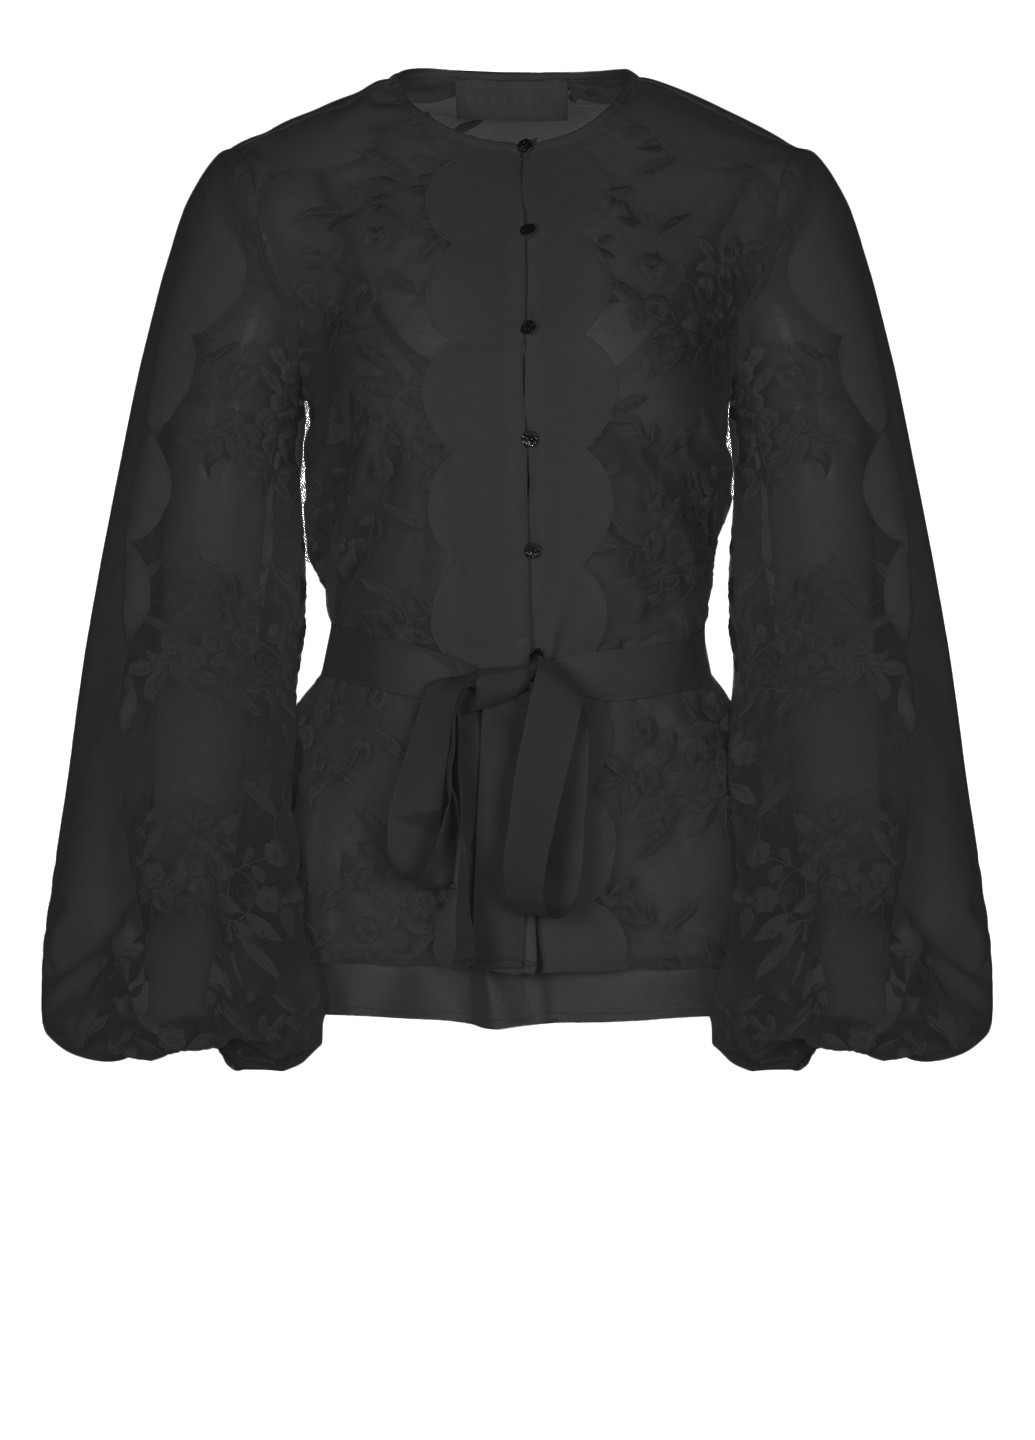 Черная демисезонная блузка the label с длинными рукавами из органзы Keepsake